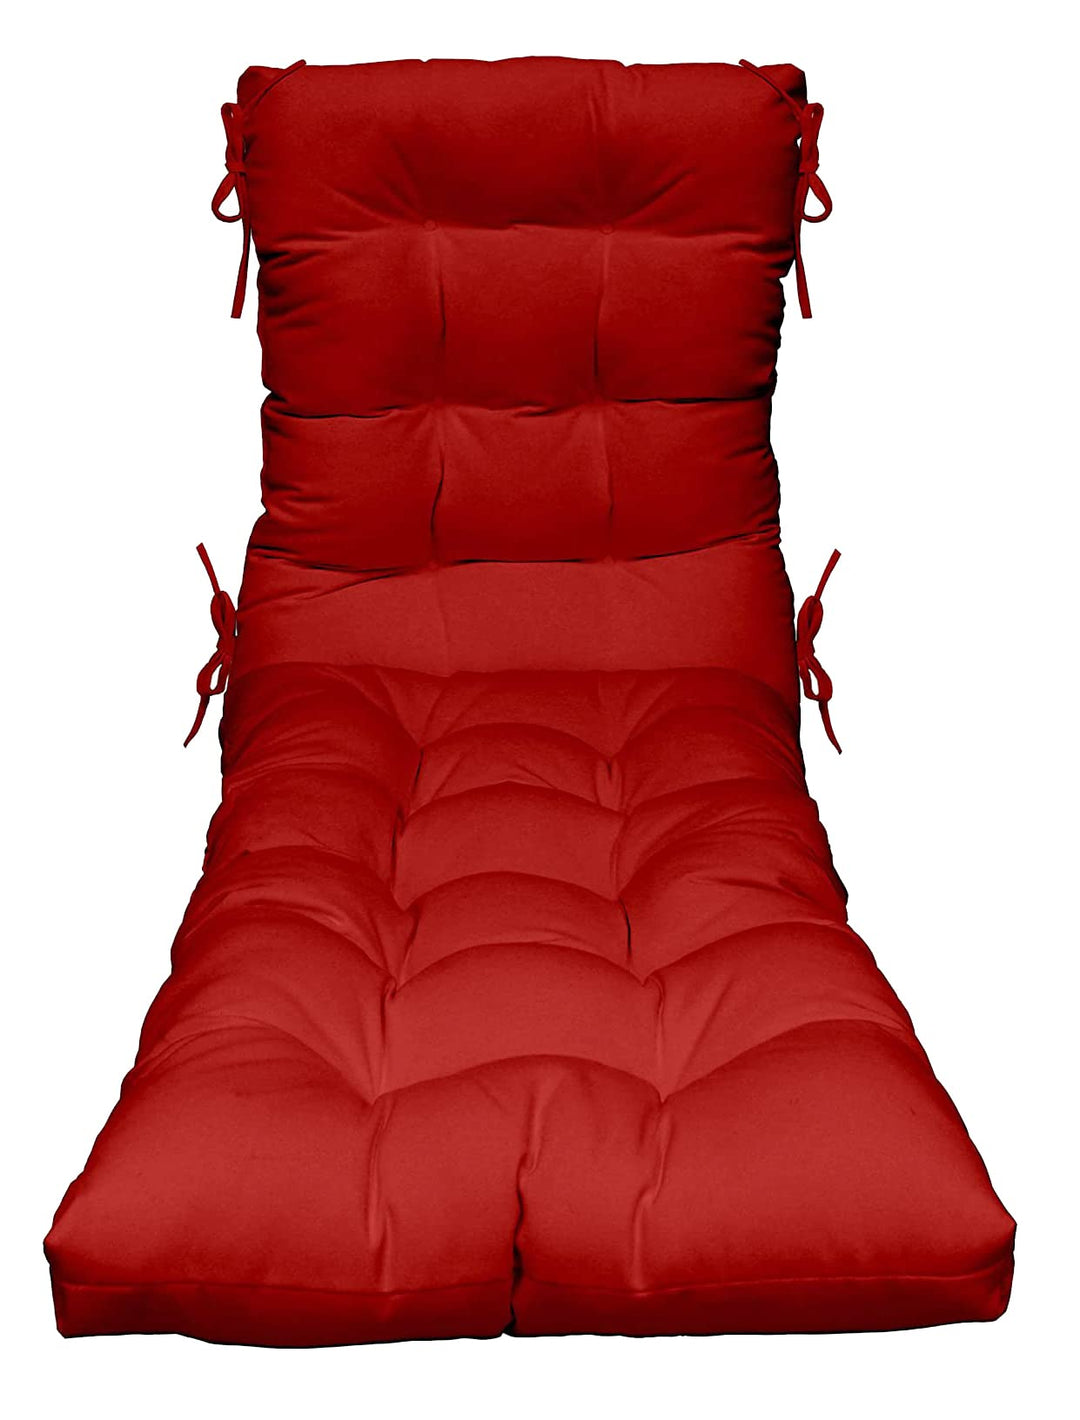 Chaise Lounge Chair Cushion, Tufted, 72" H x 22" W", Sunbrella Solids - RSH Decor